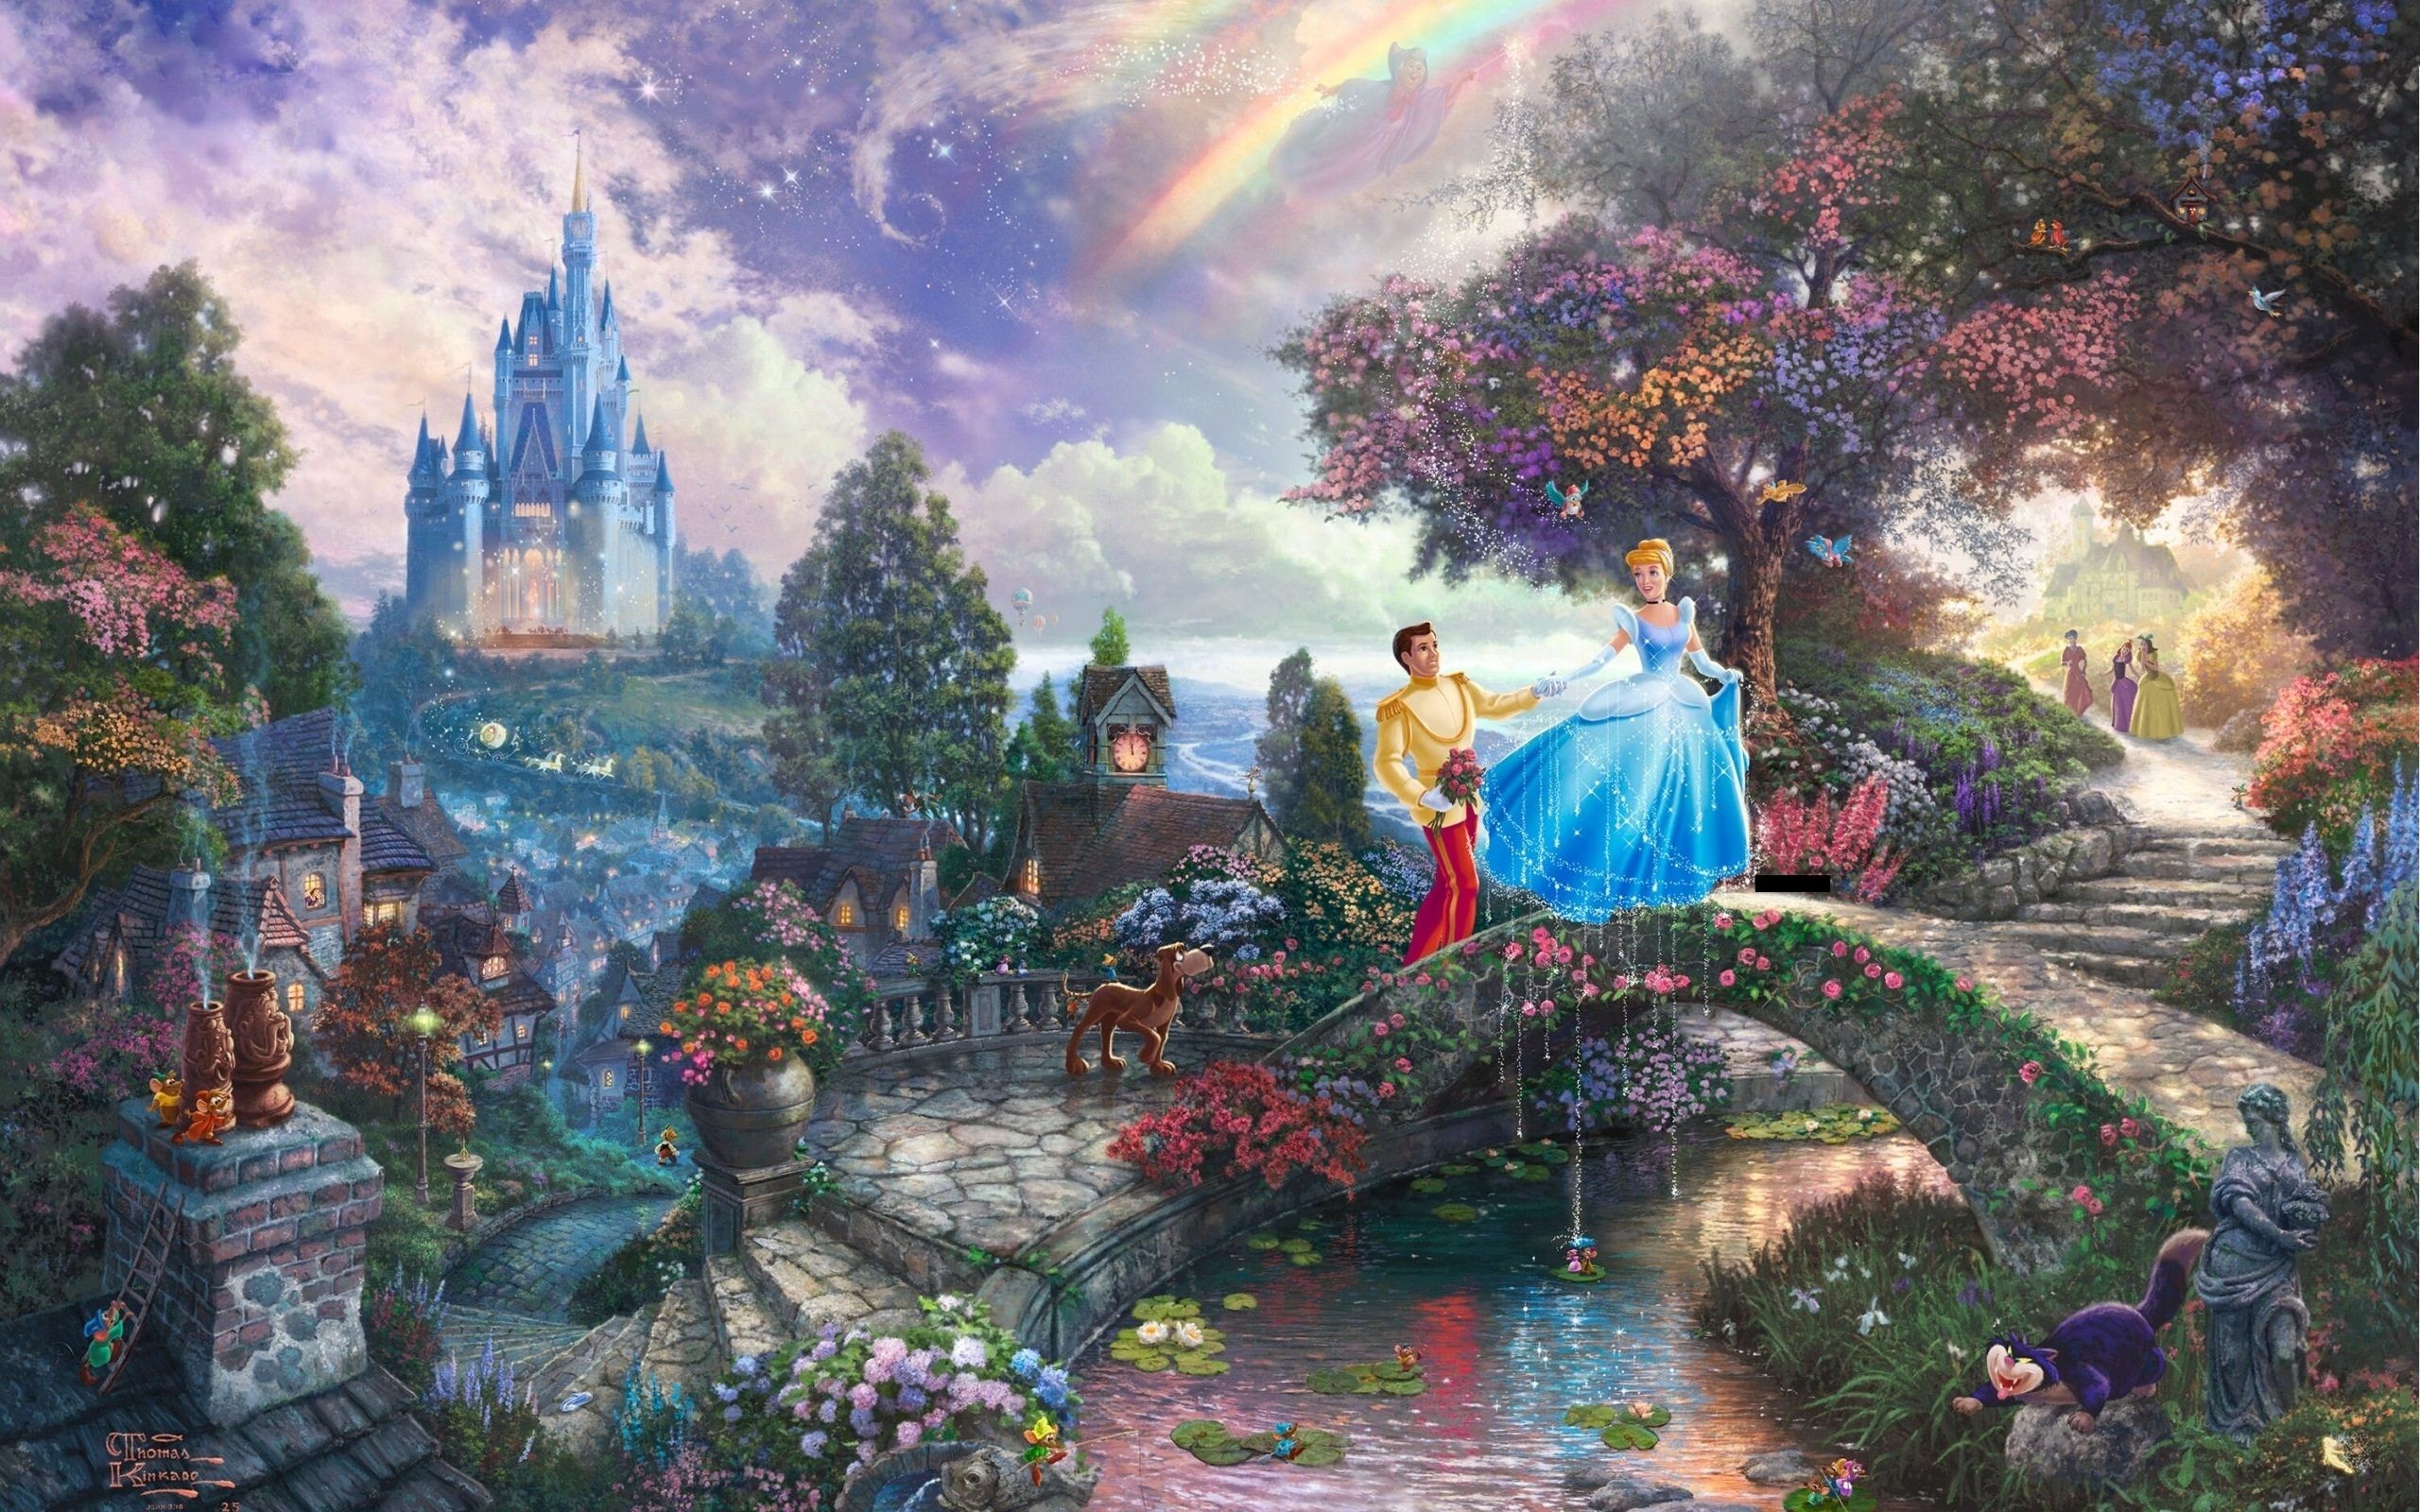 2560x1600 Thomas Kinkade Disney Dreams Collection Wallpaper Thomas kinkade